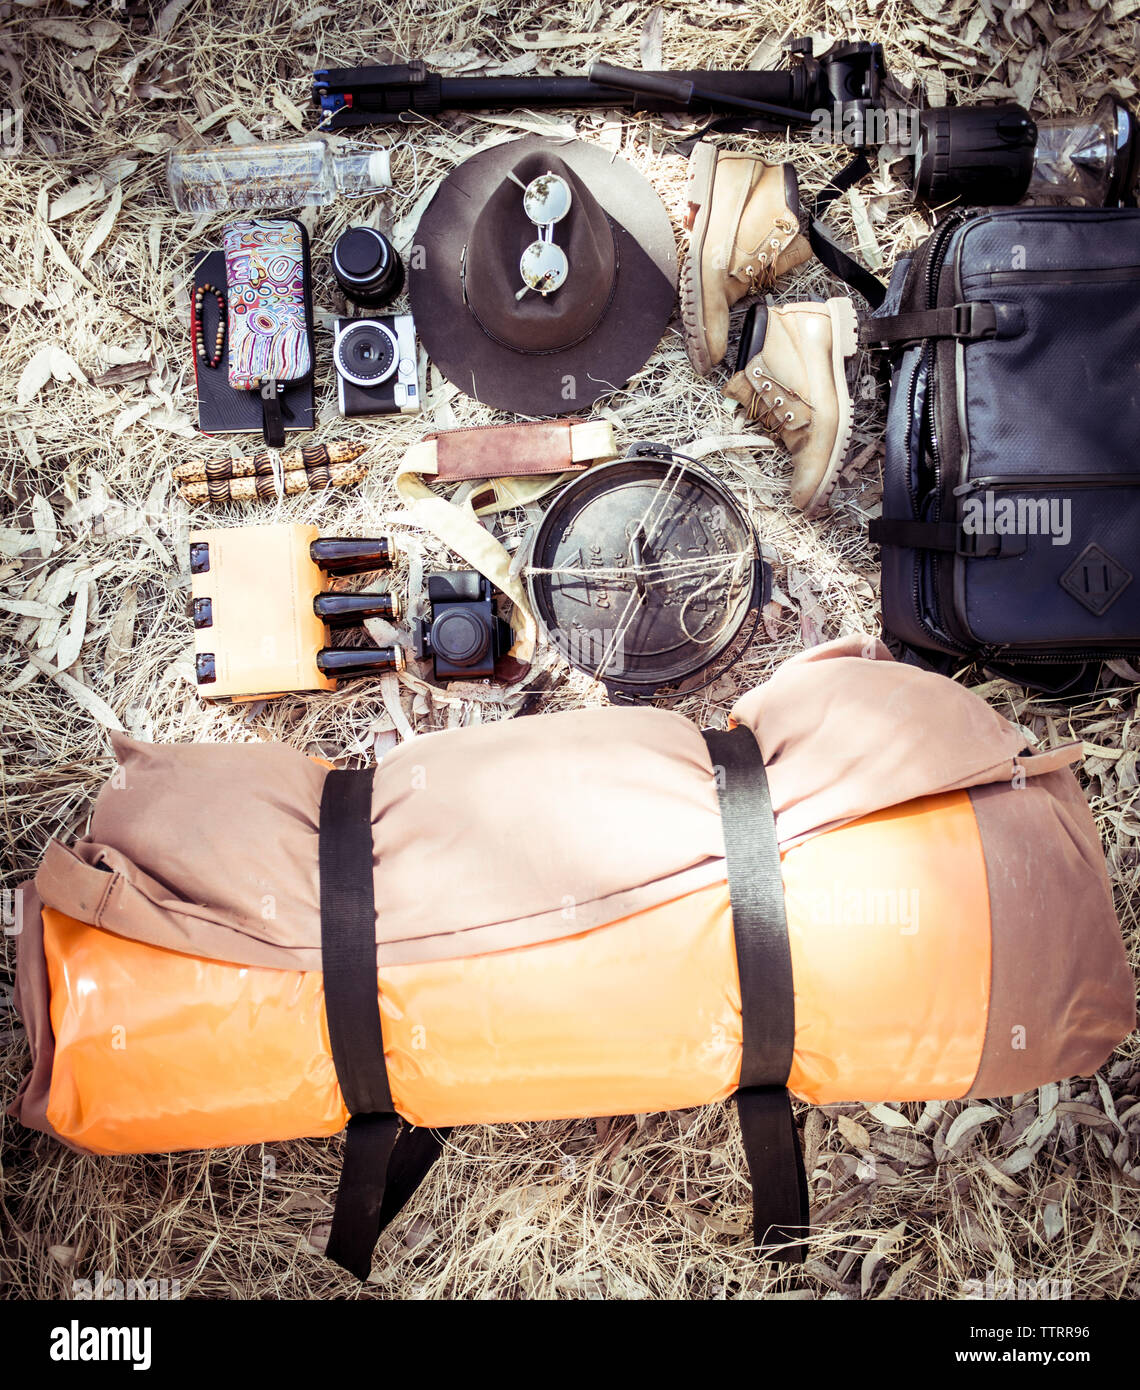 High angle view équipements de camping avec des accessoires personnels sur terrain Banque D'Images